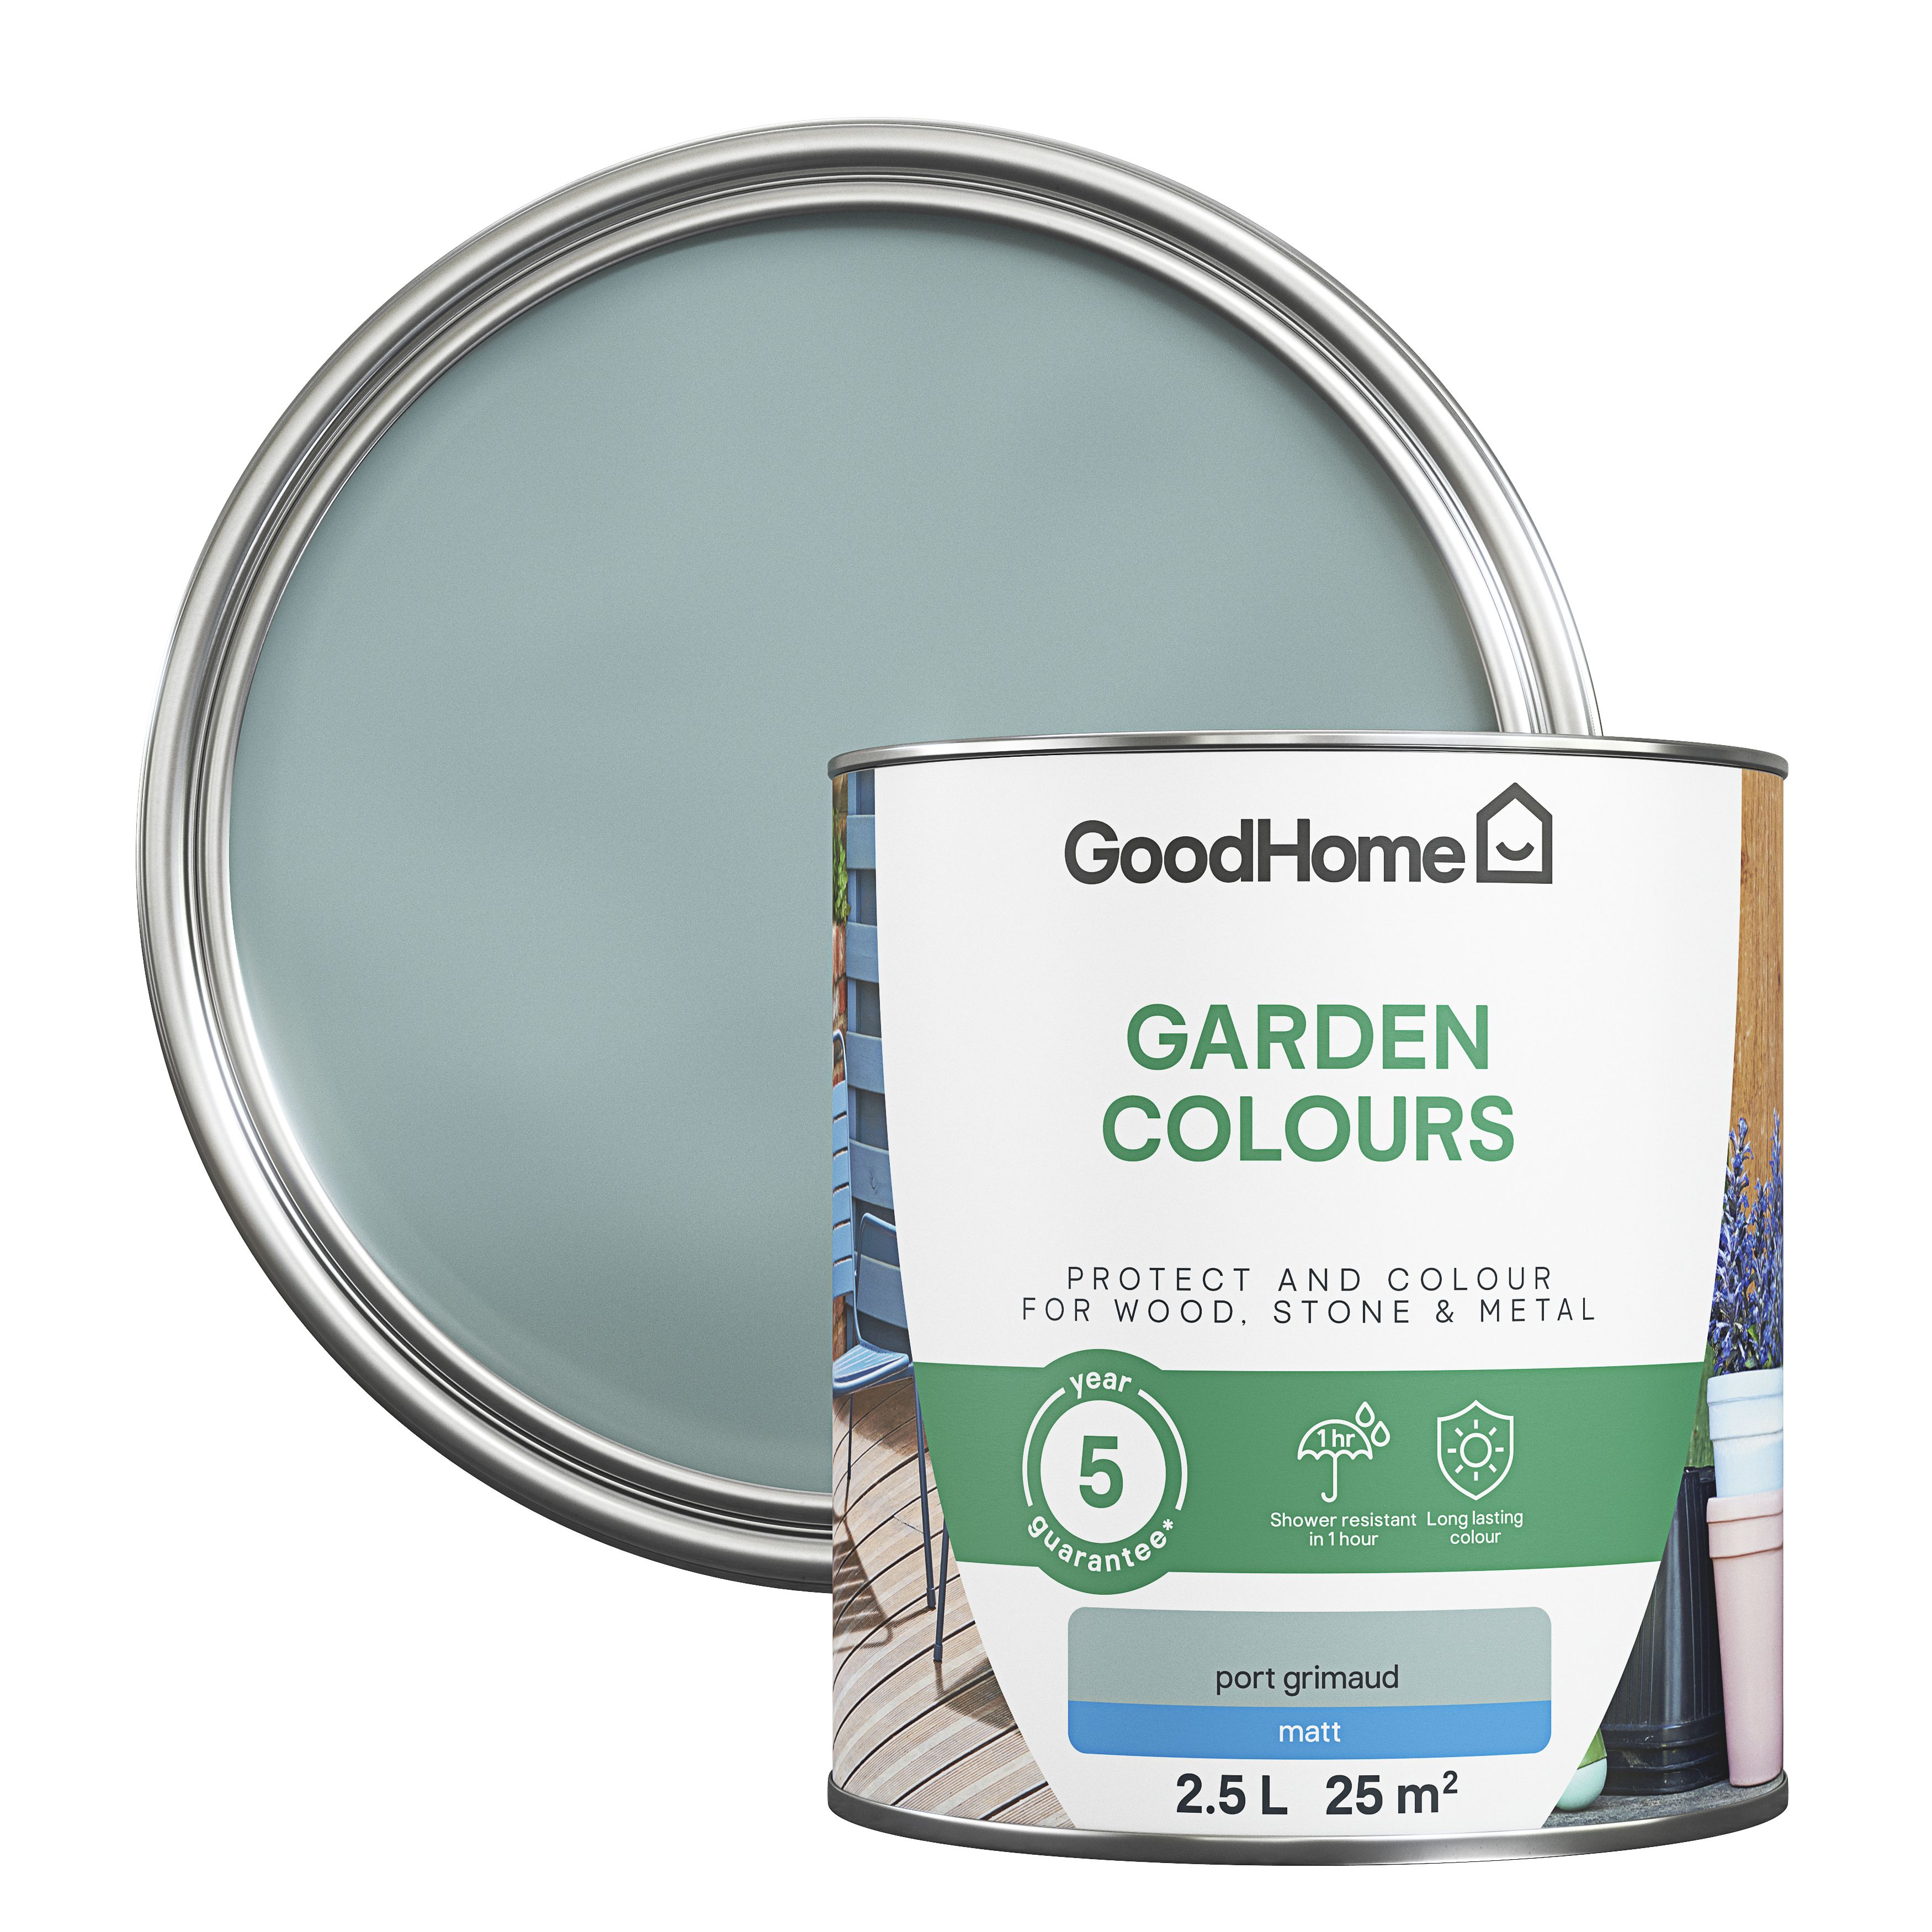 GoodHome Colour It Port Grimaud Matt Multi-surface paint, 2.5L